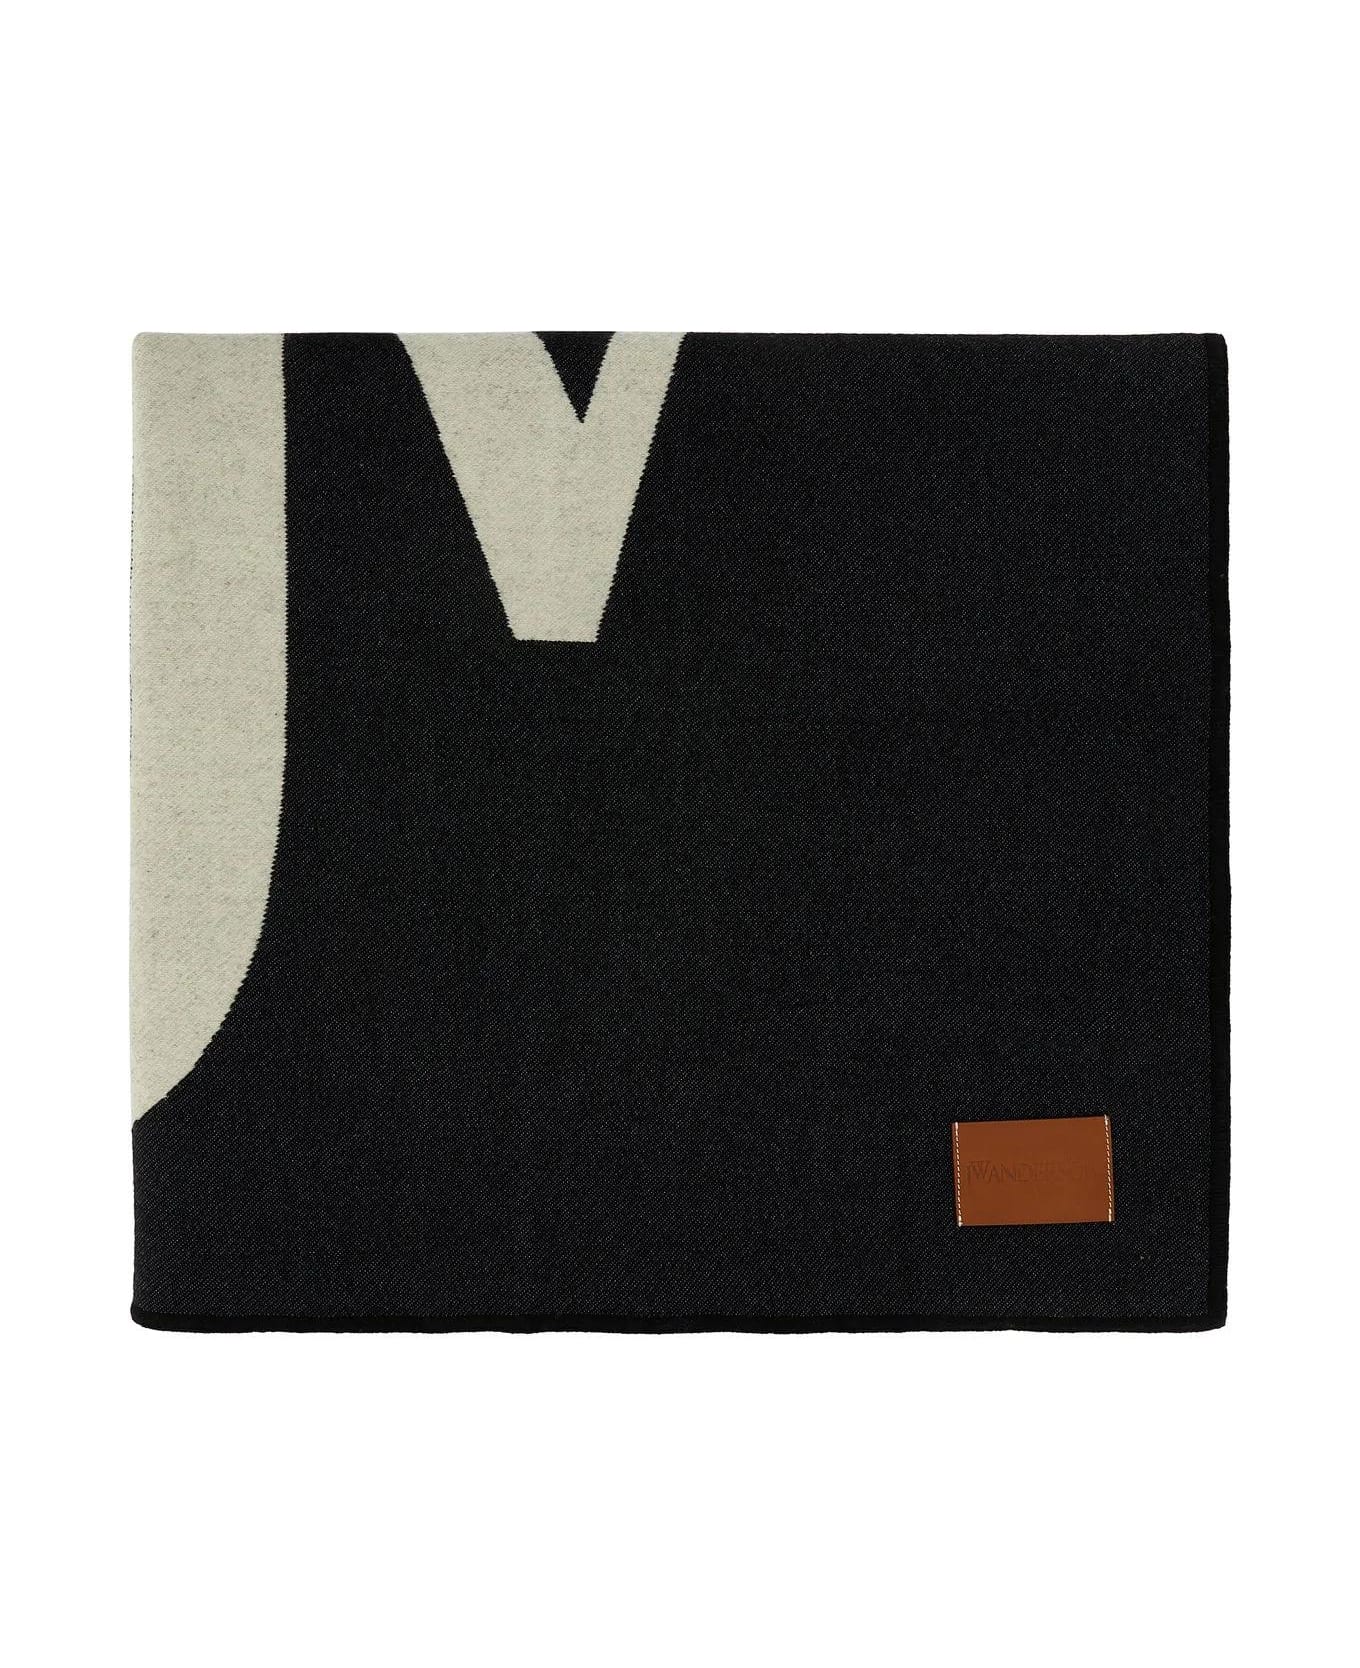 J.W. Anderson Black Wool Blend Blanket - Black